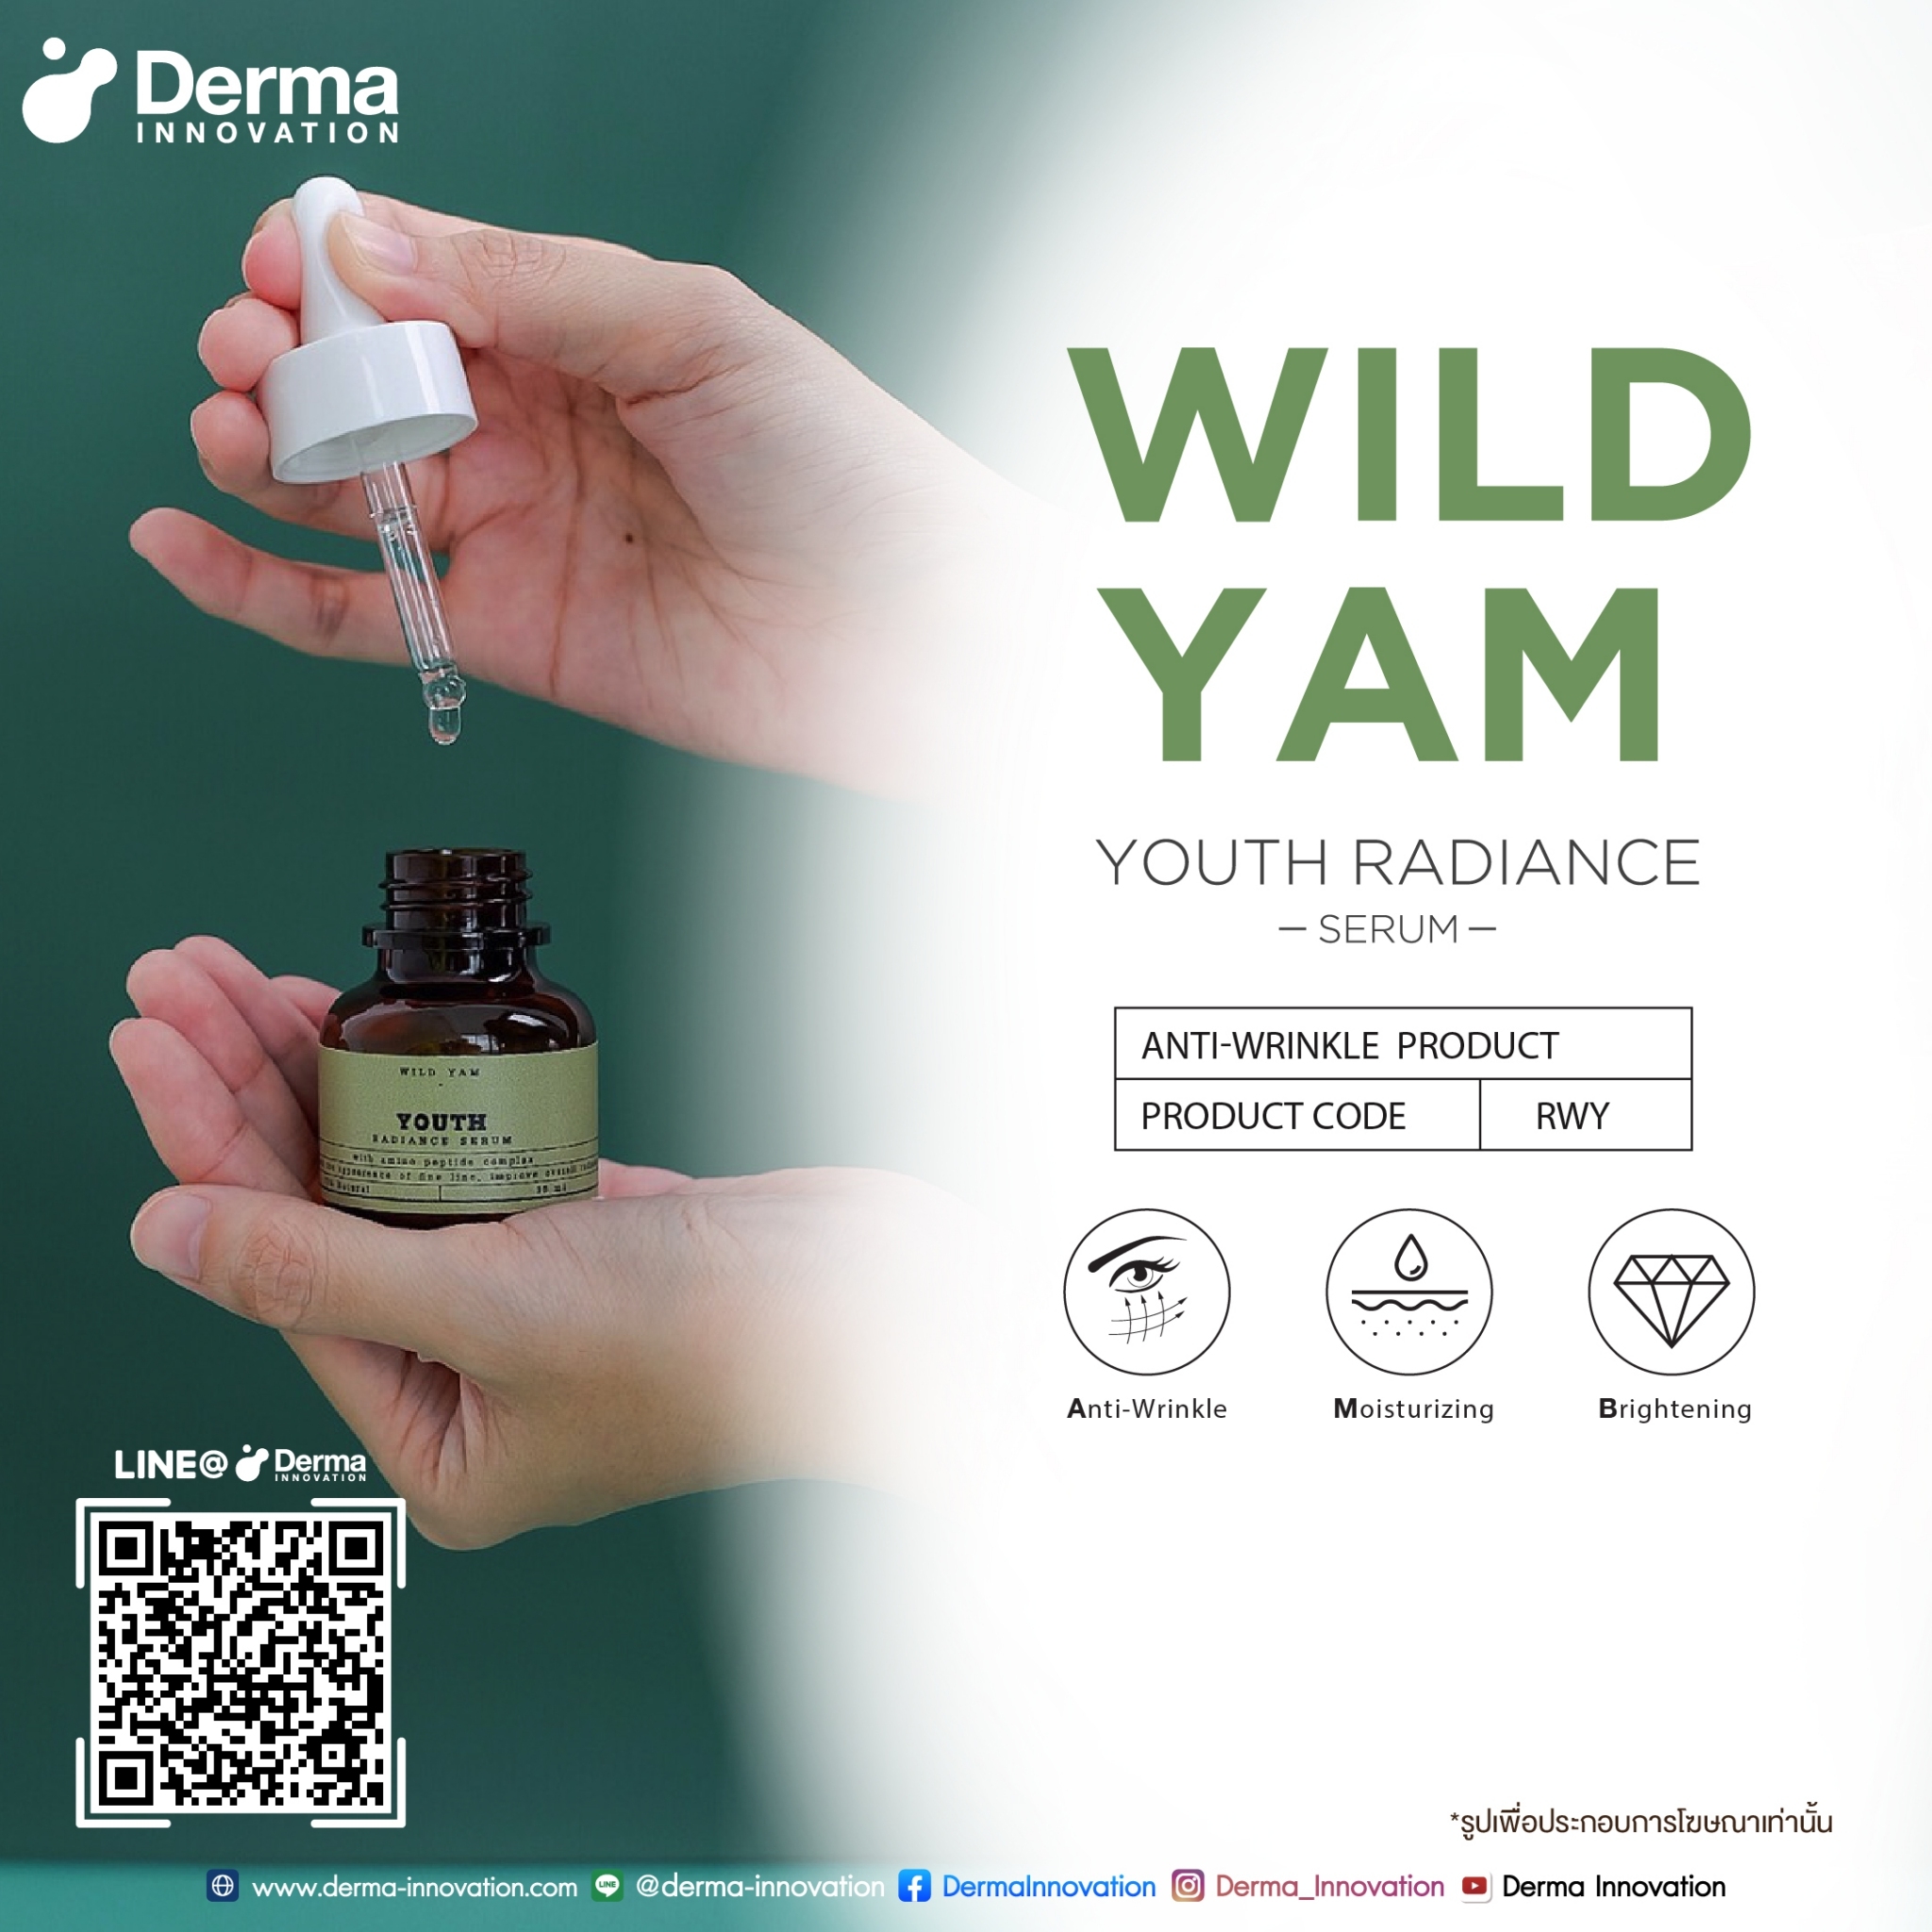 Wild Yam Youth Radiance Serum